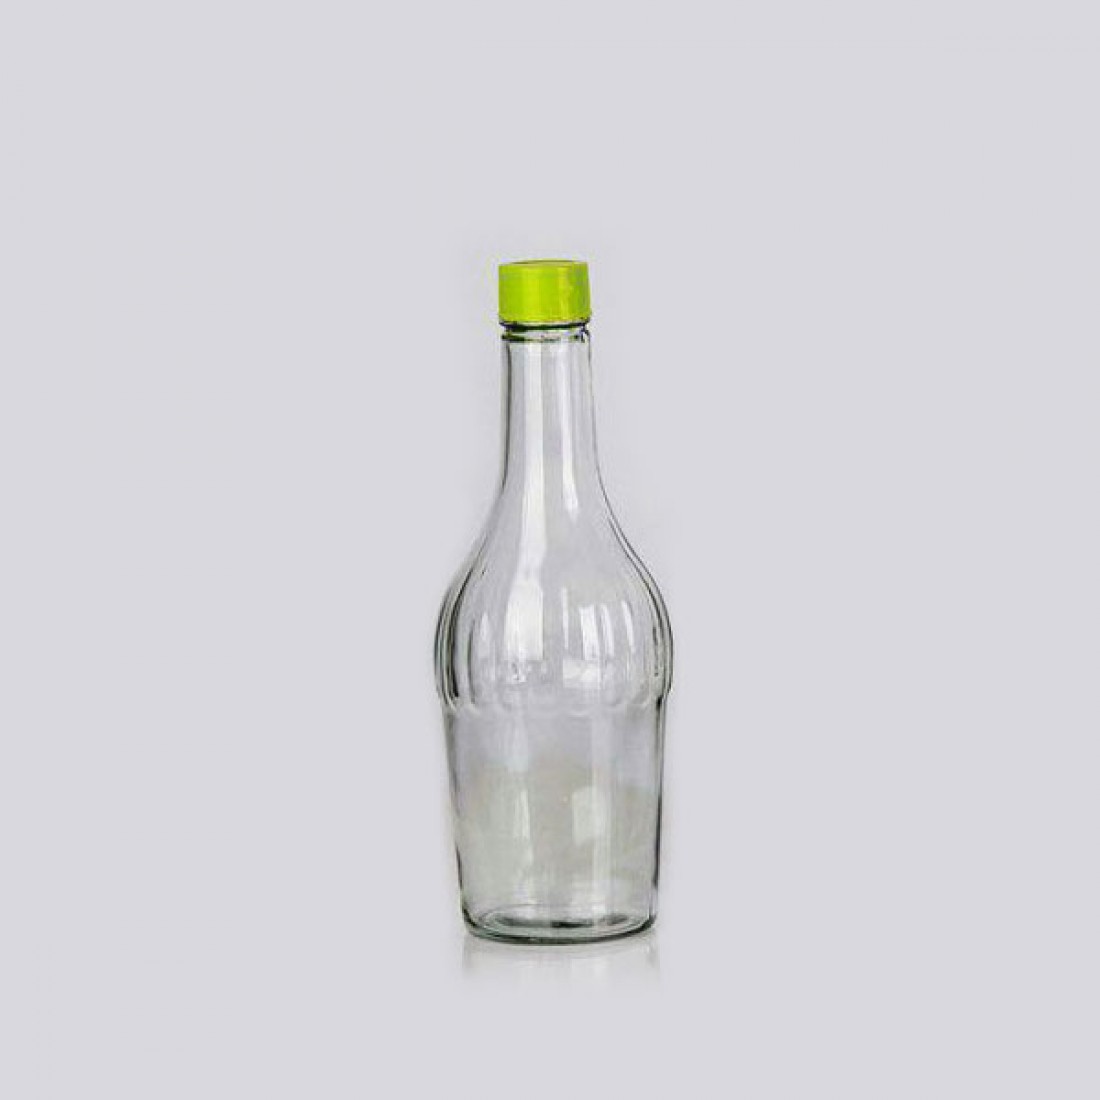 قیمت بطری شیشه ای یک لیتری + خرید باور نکردنی